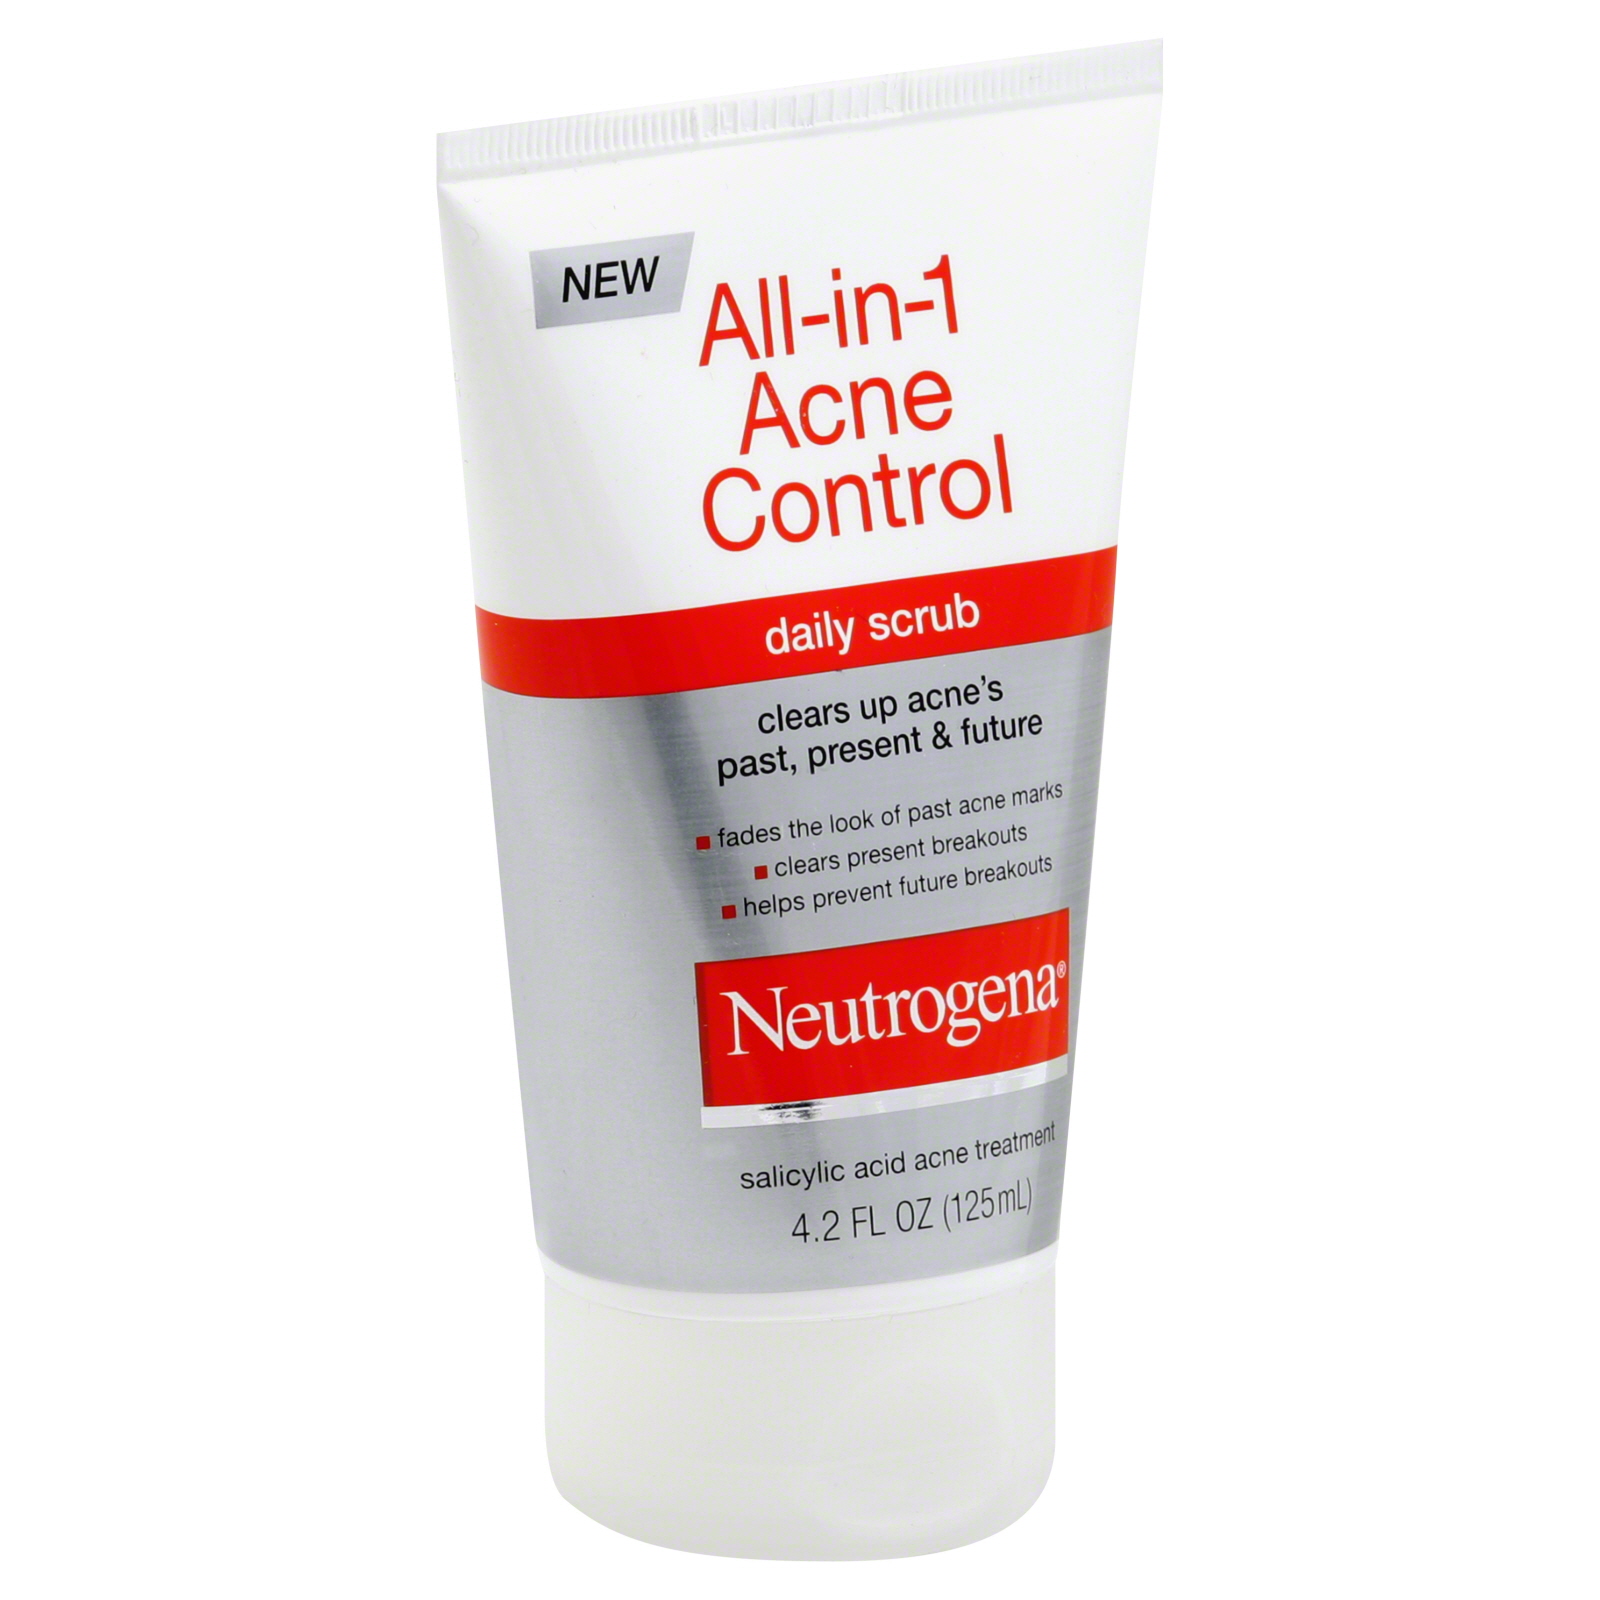 Neutrogena Daily Scrub, All-In-1, Acne Control, 4.2 fl oz (125 ml)